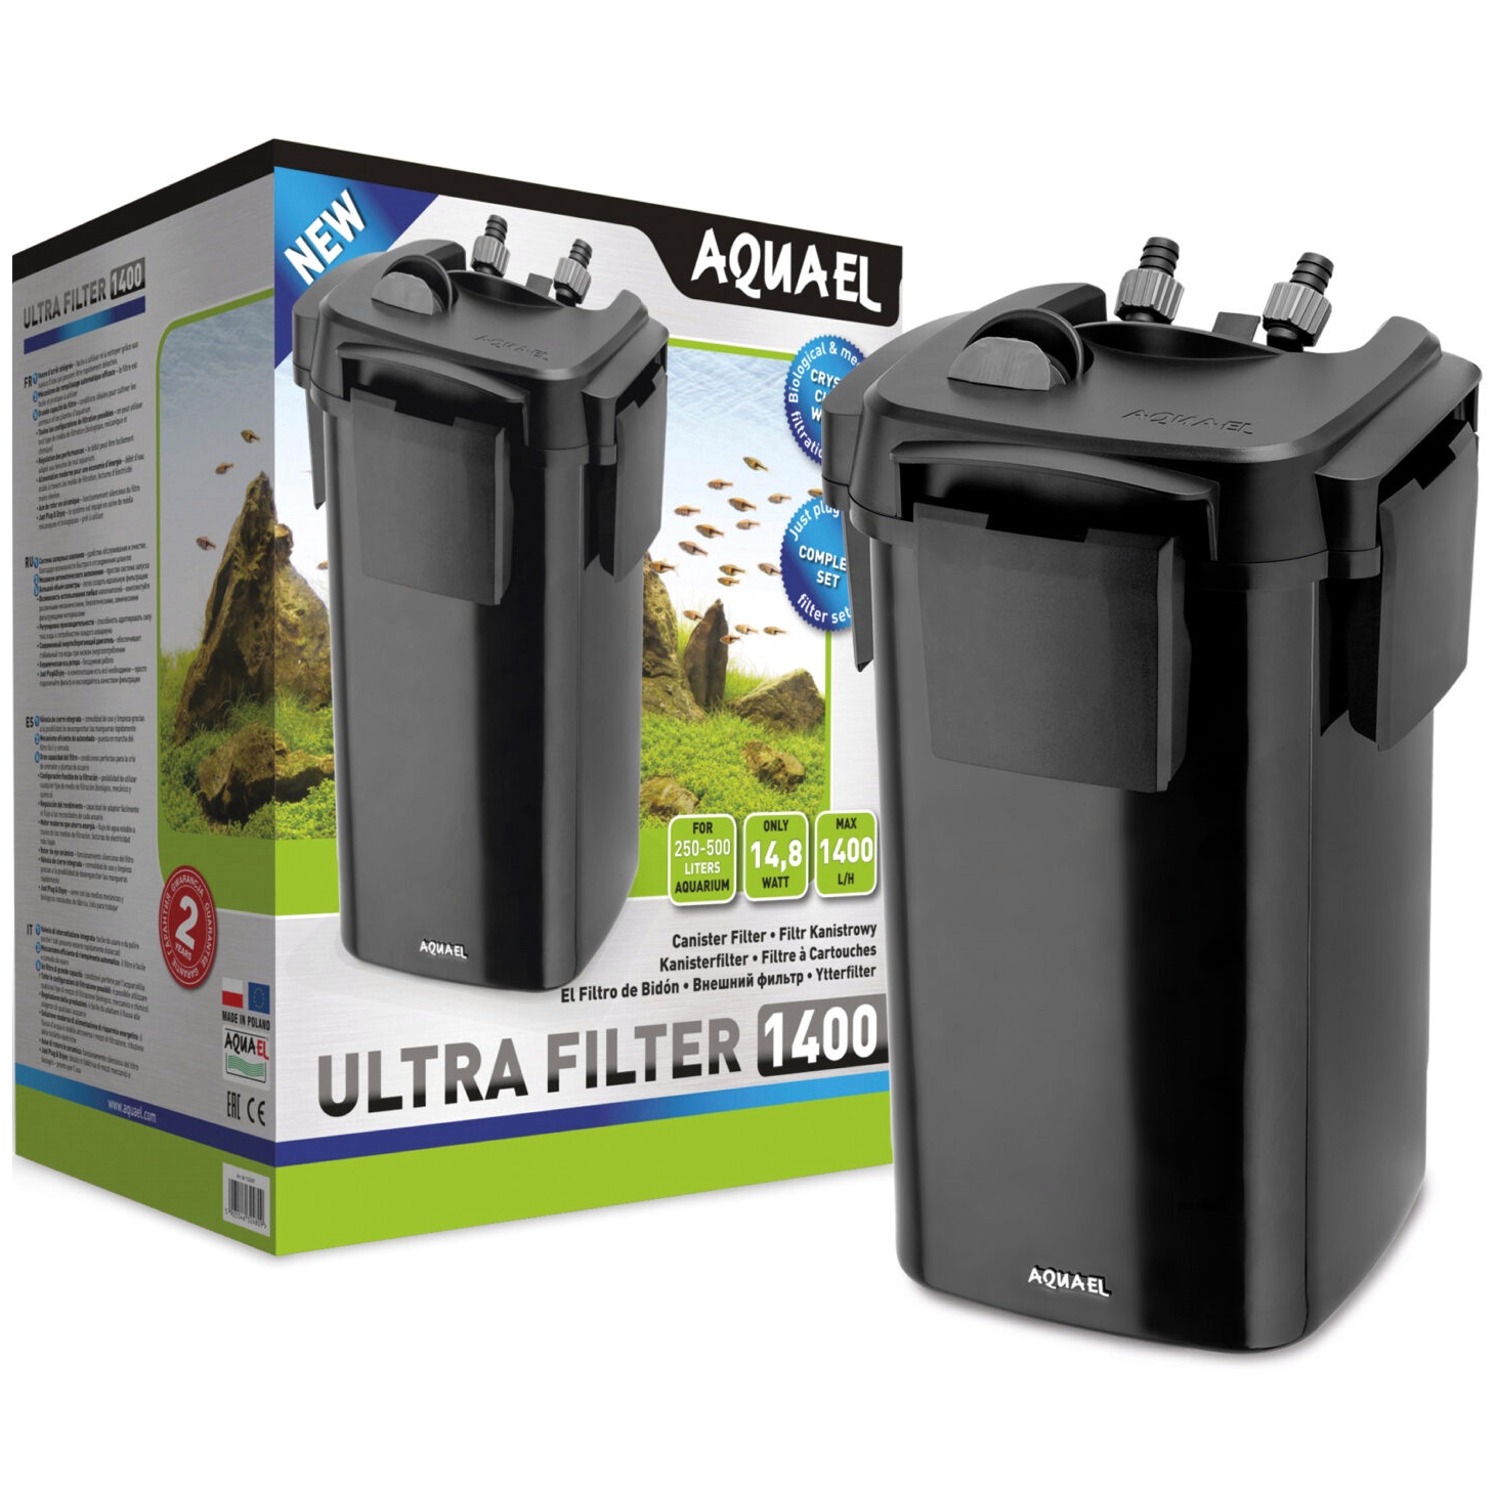 AQUAEL Ultra Filter 1400 filtre externe 1400 L/h pour aquarium de 260 à 600 L